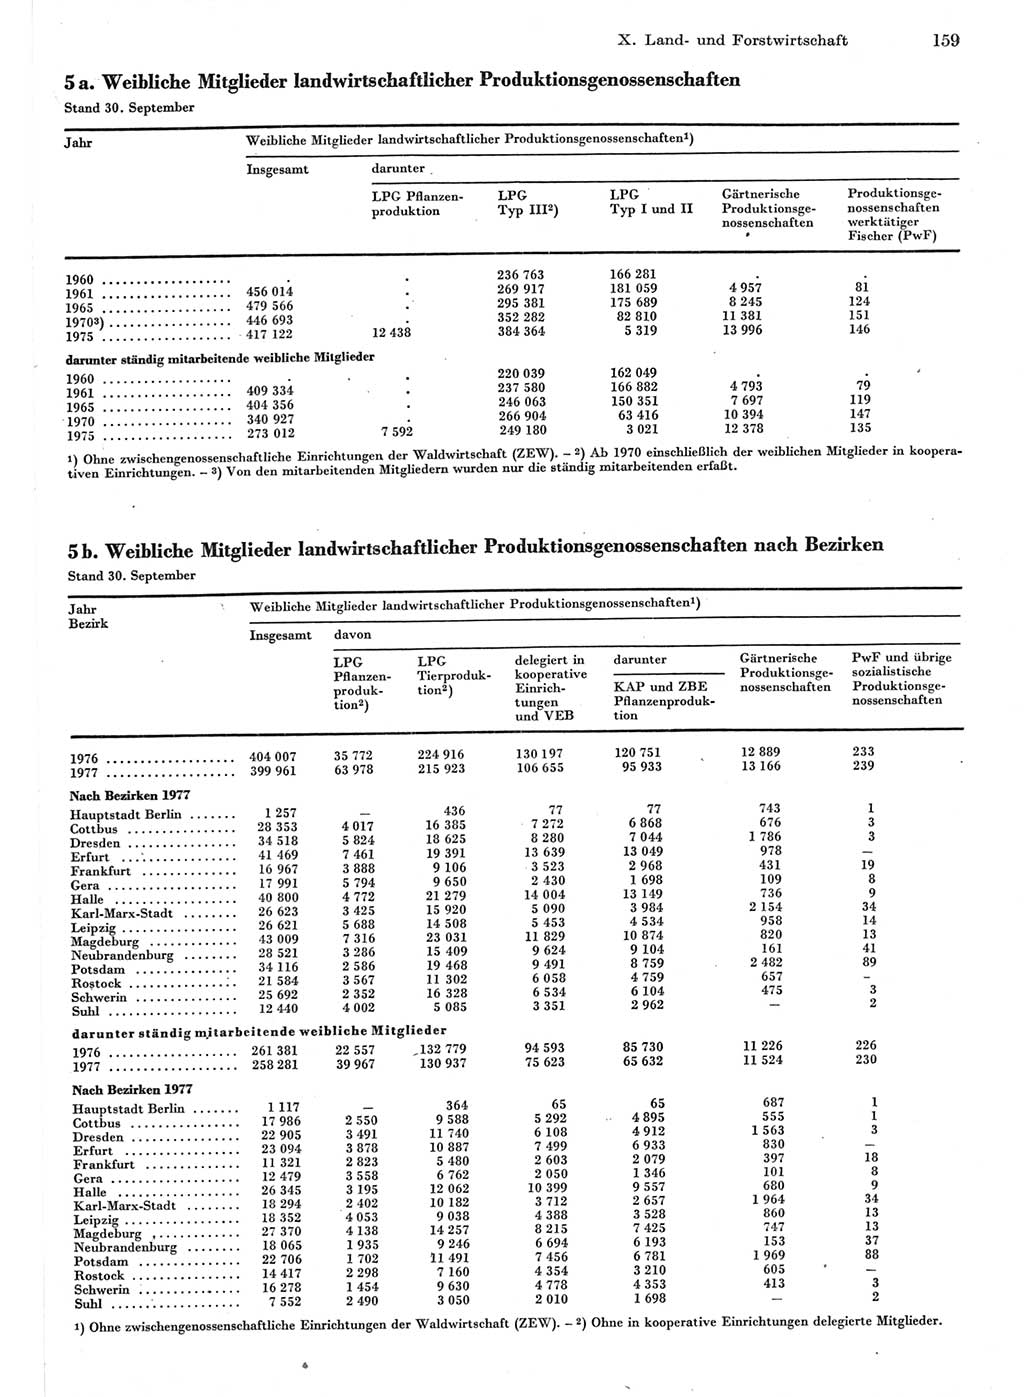 Statistisches Jahrbuch der Deutschen Demokratischen Republik (DDR) 1978, Seite 159 (Stat. Jb. DDR 1978, S. 159)